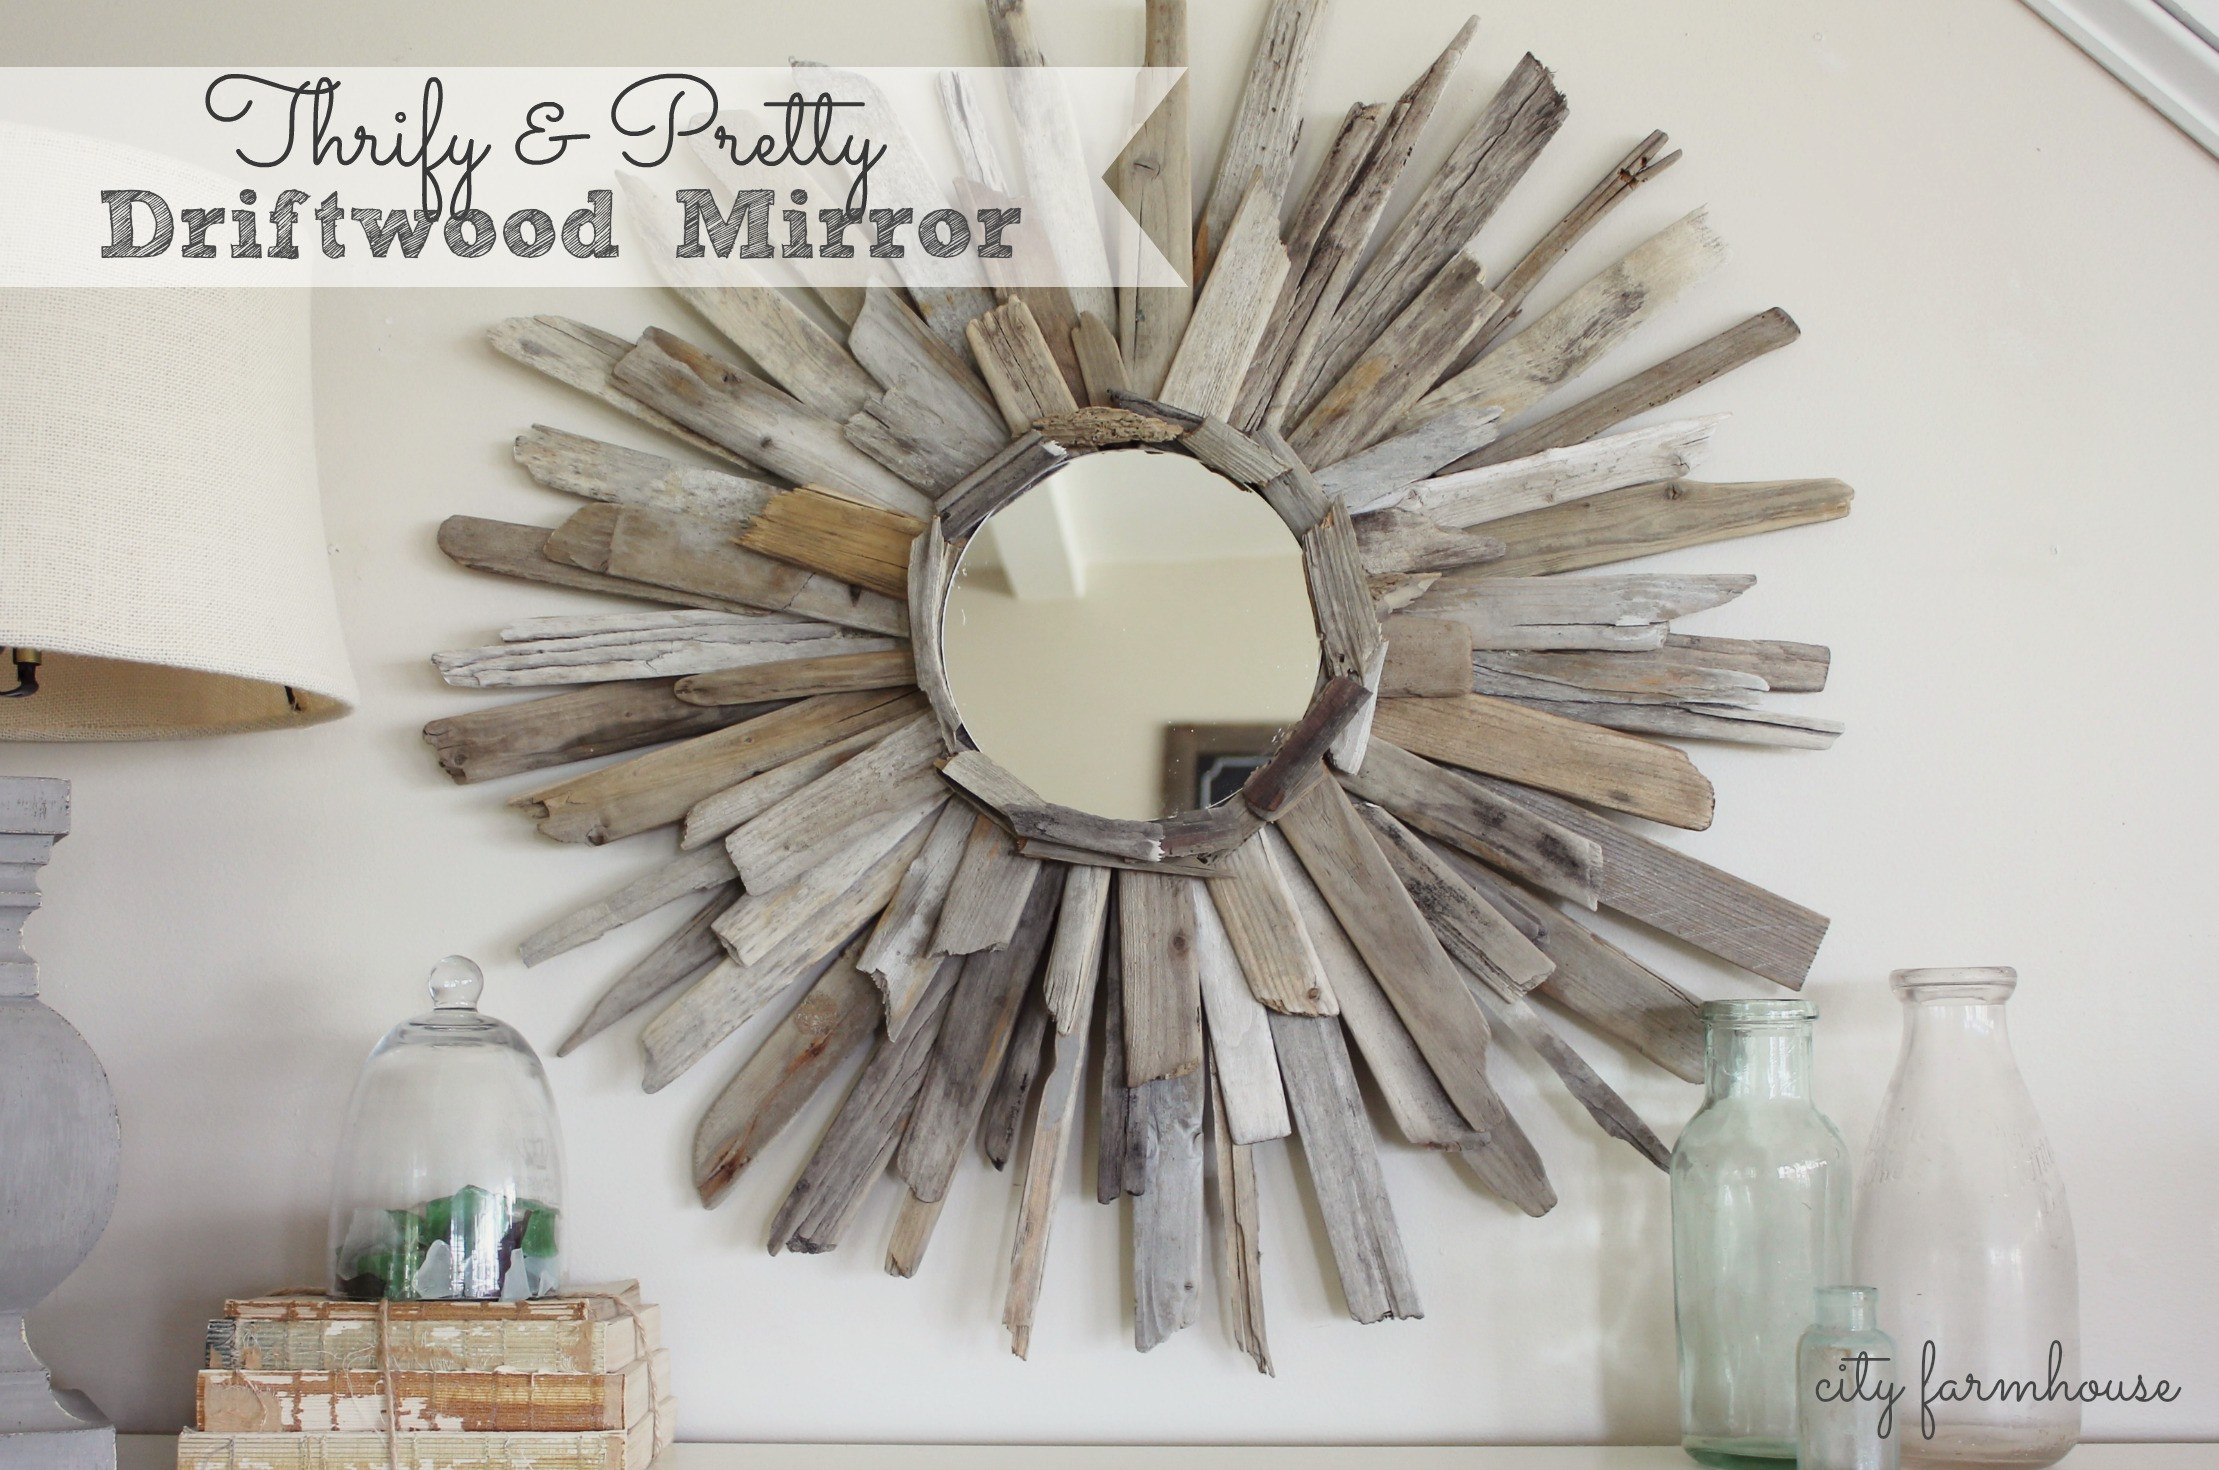 Driftwood Mirror DIY
 Thrifty & Pretty DIY Driftwood Mirror City Farmhouse